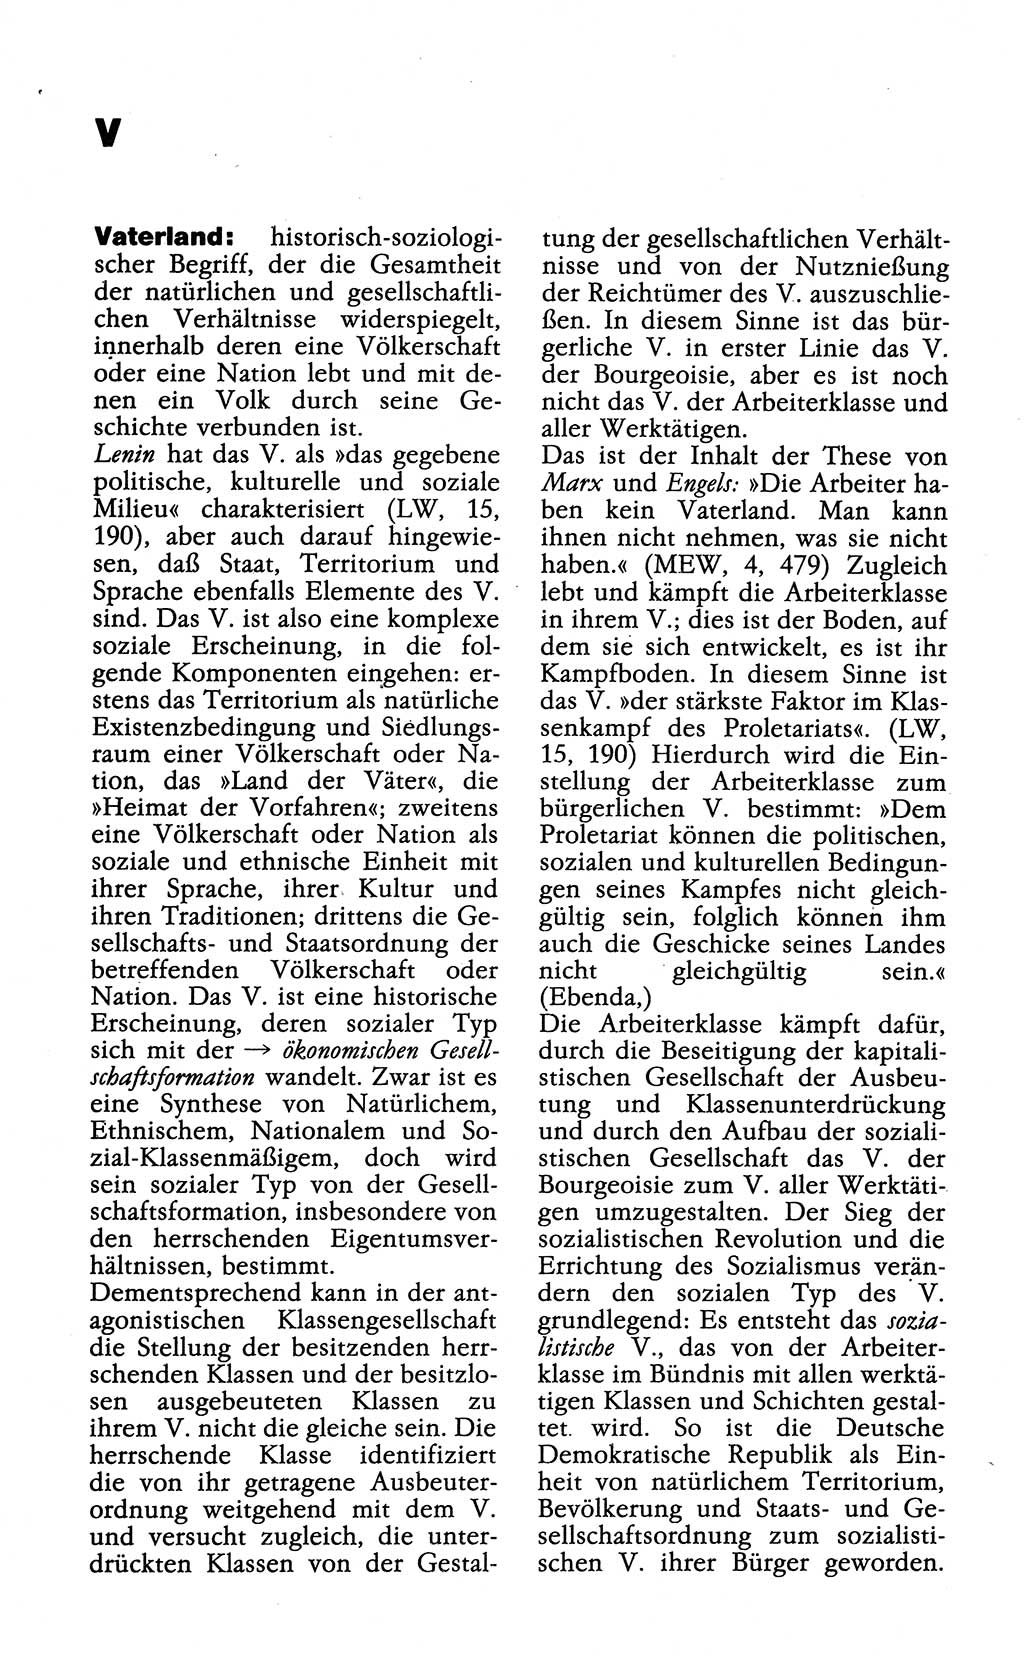 Wörterbuch der marxistisch-leninistischen Philosophie [Deutsche Demokratische Republik (DDR)] 1985, Seite 536 (Wb. ML Phil. DDR 1985, S. 536)